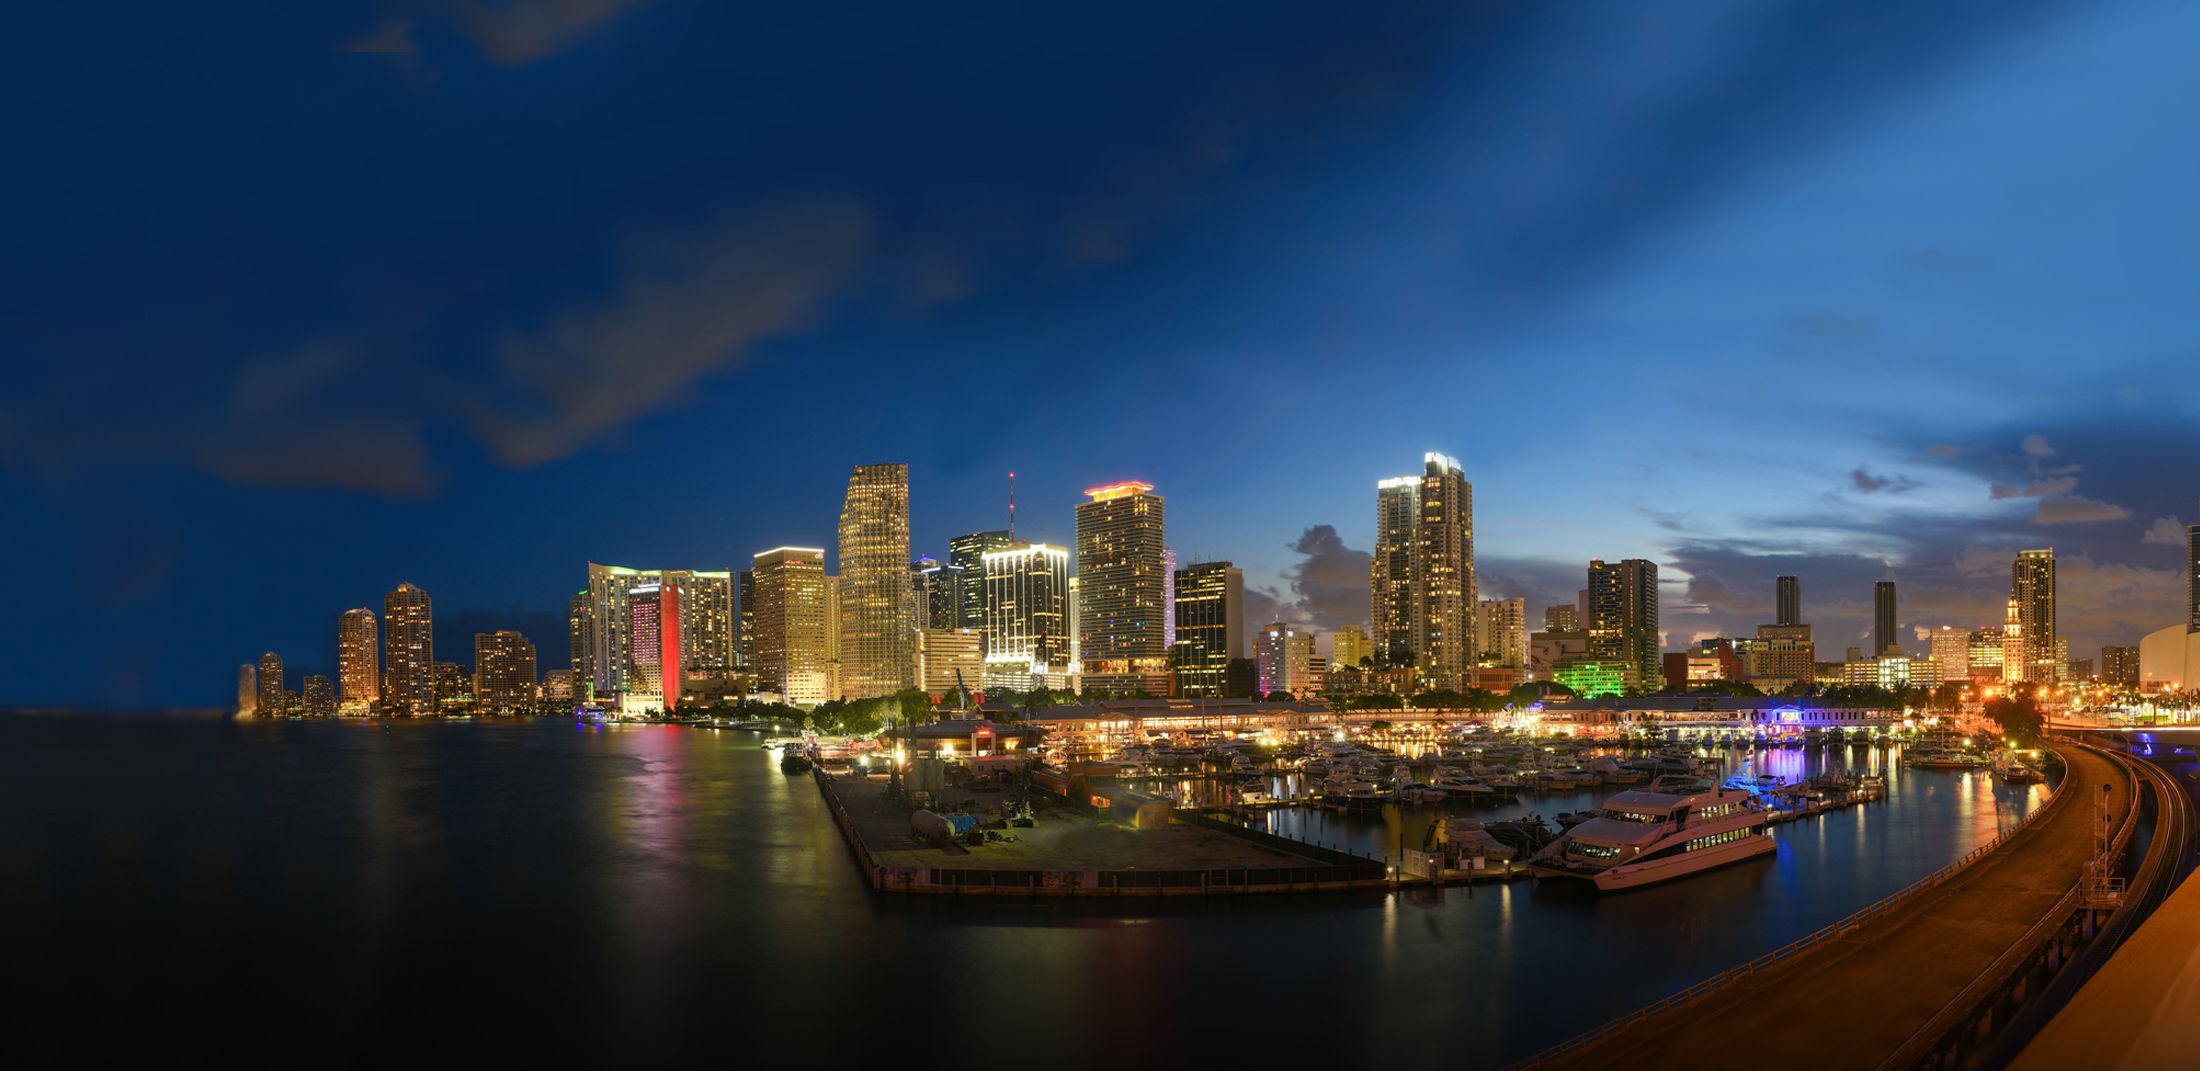 Miami DDA - Economic Development Miami - Tourism Miami Miami DDA.